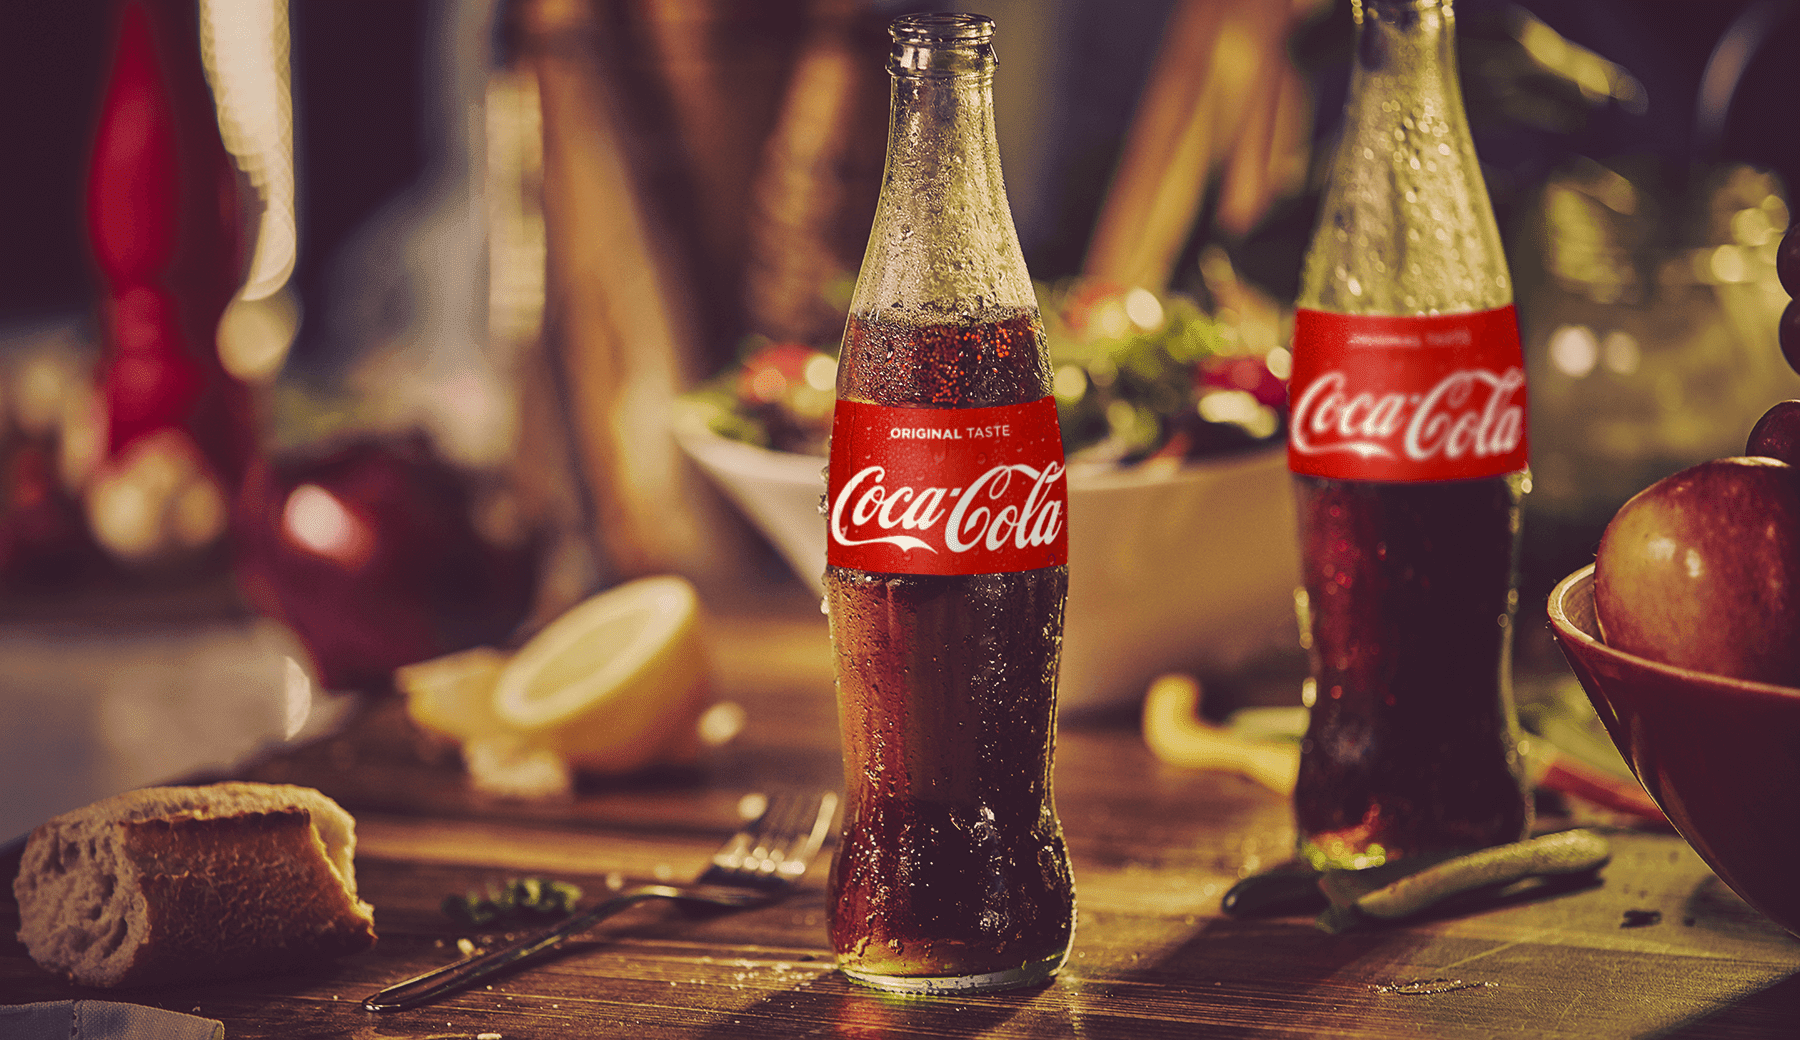 10 công dụng bất ngờ của Coca-Cola, đặc biệt hữu hiệu với các công việc nhà